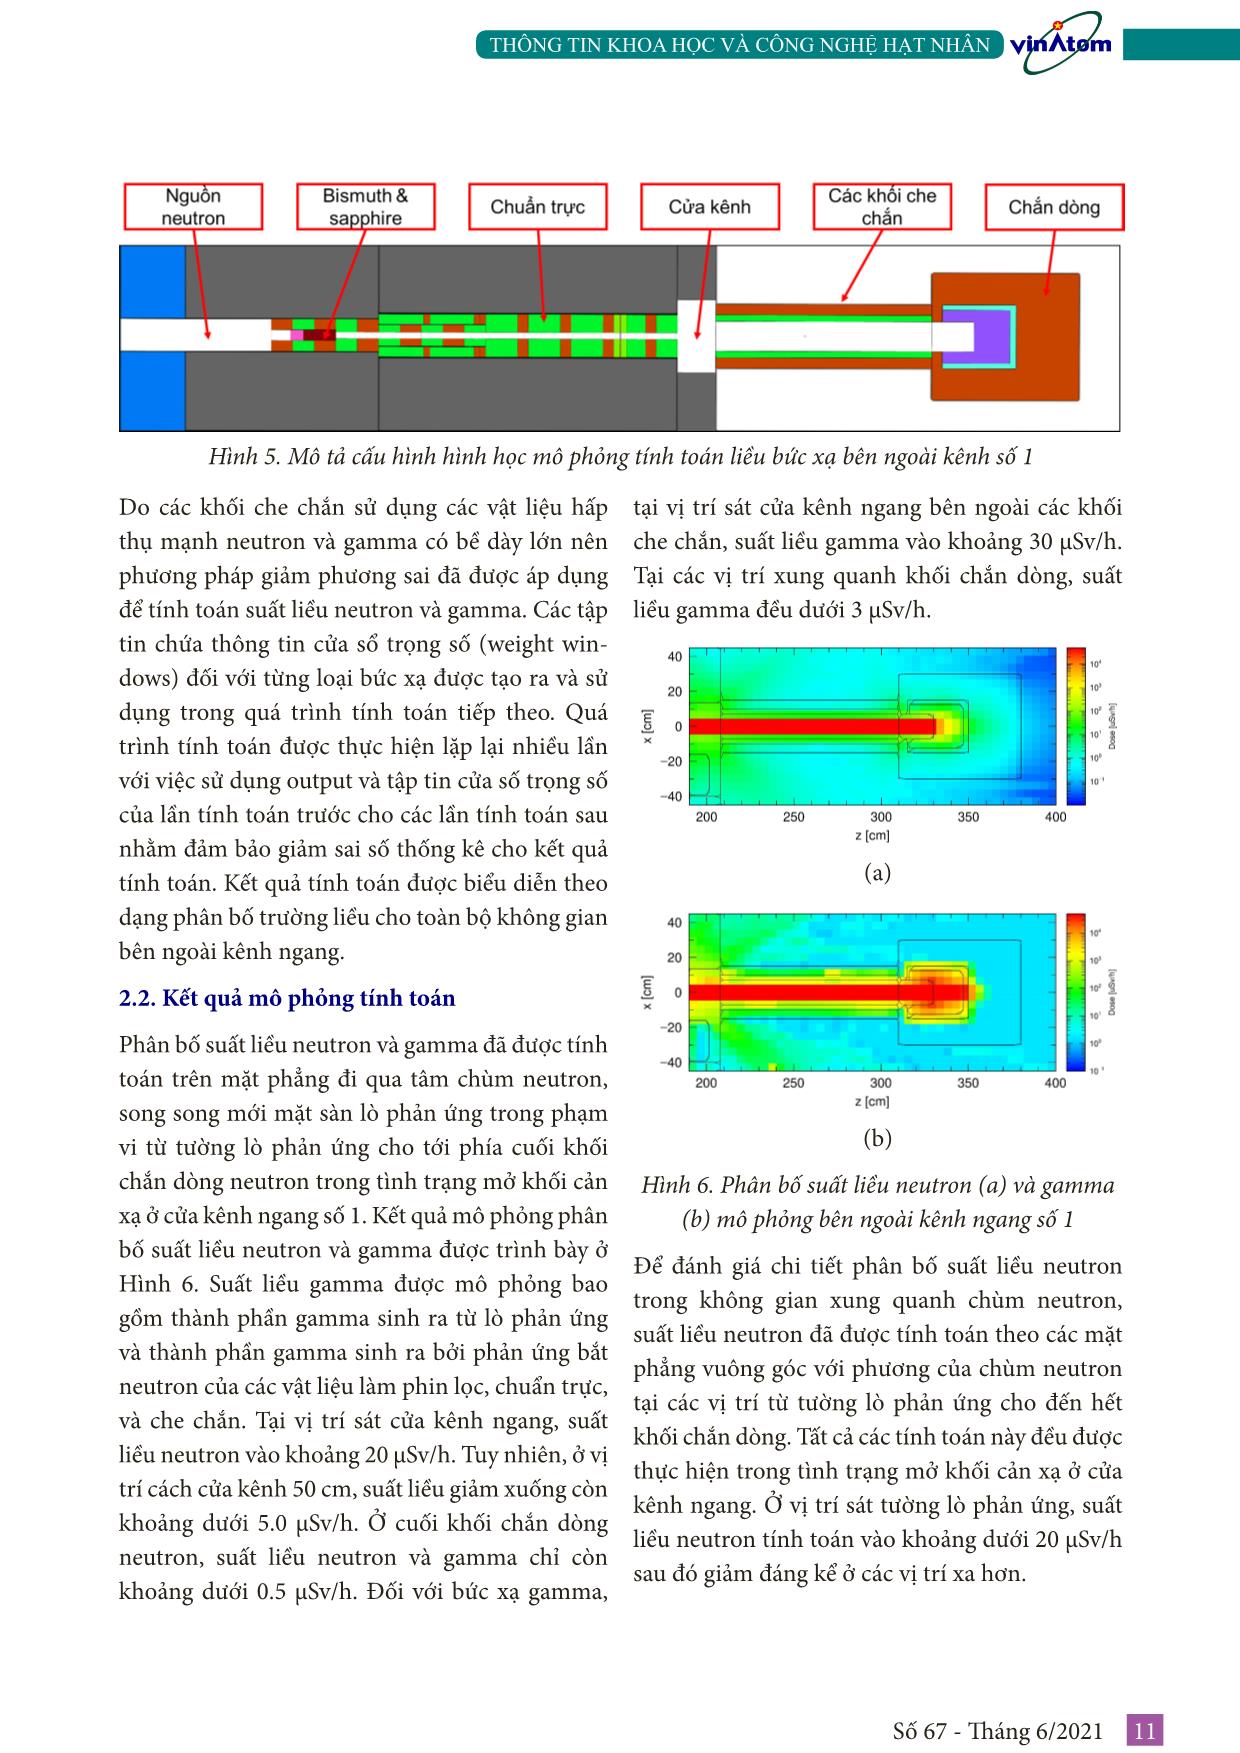 Thiết kế che chắn an toàn bức xạ trên kênh ngang số 1 của lò phản ứng hạt nhân Đà Lạt trang 4